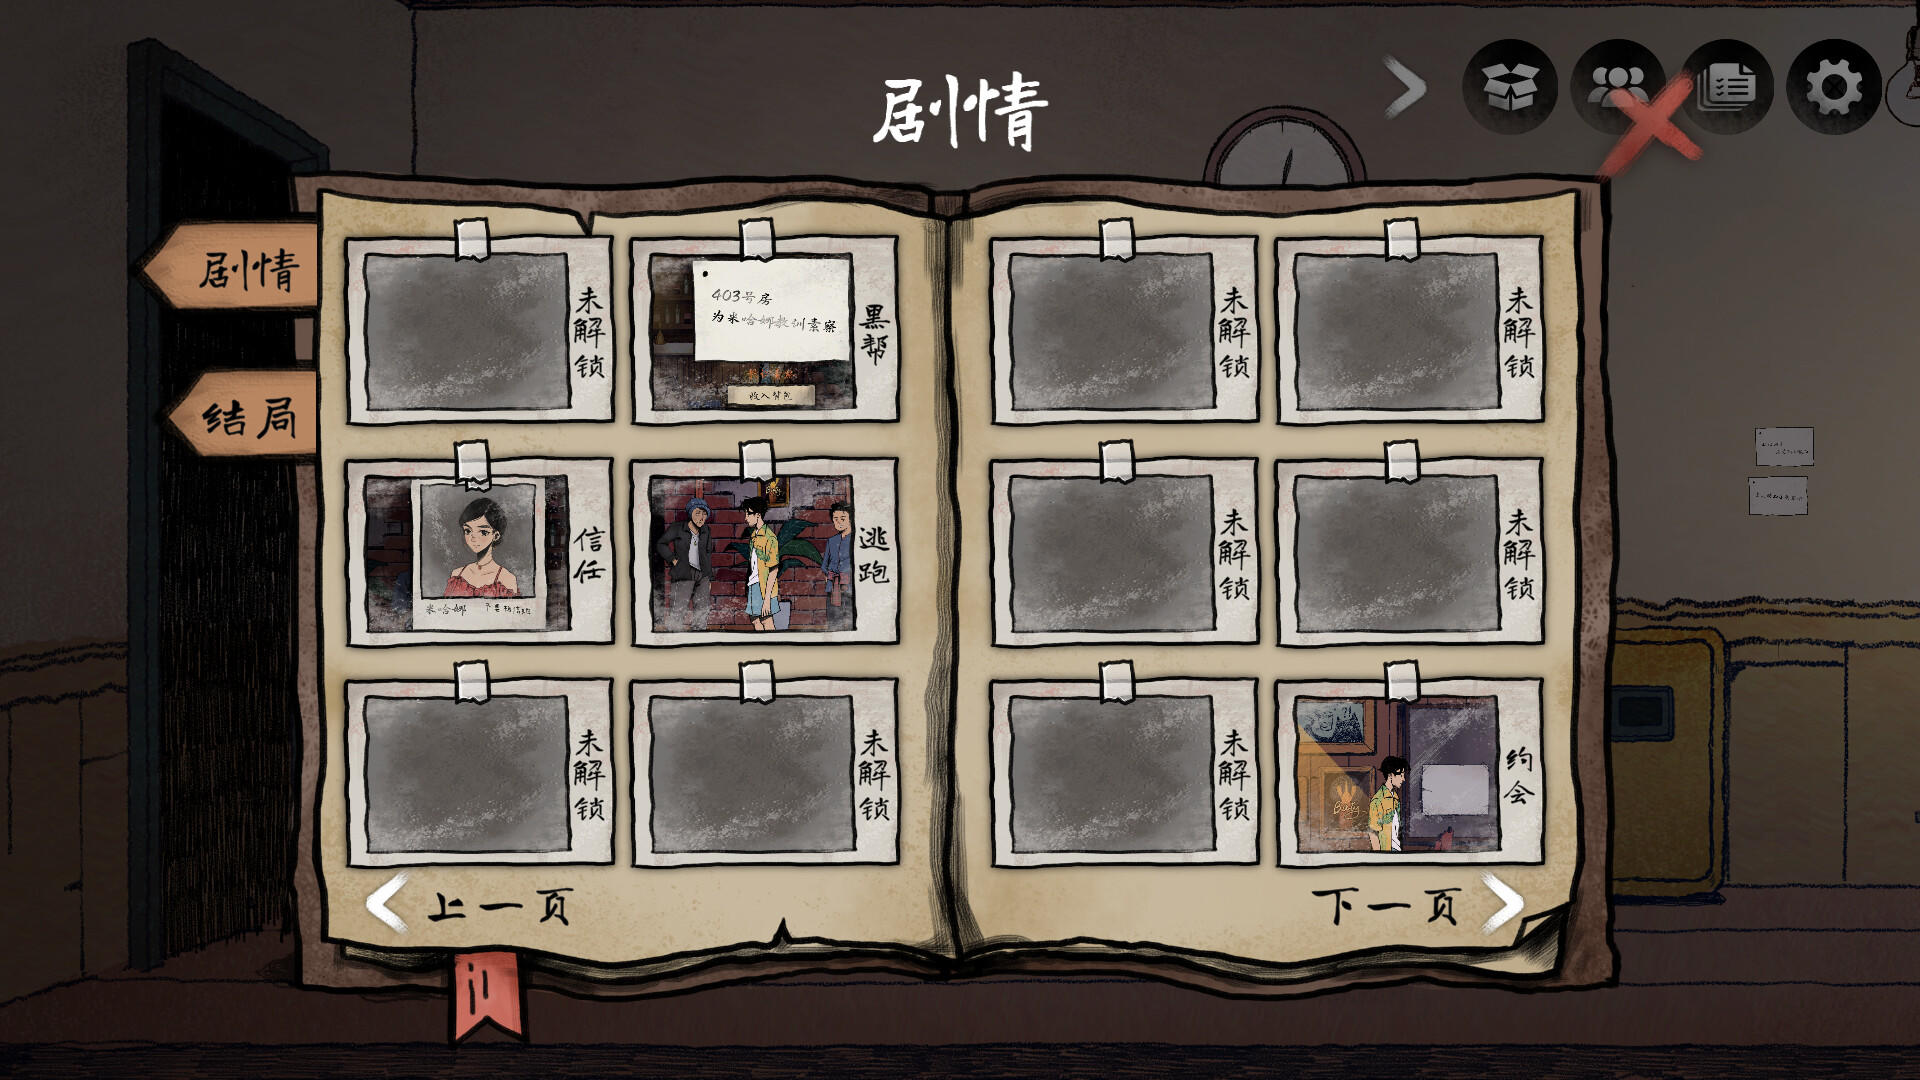 No Crime  screenshot game